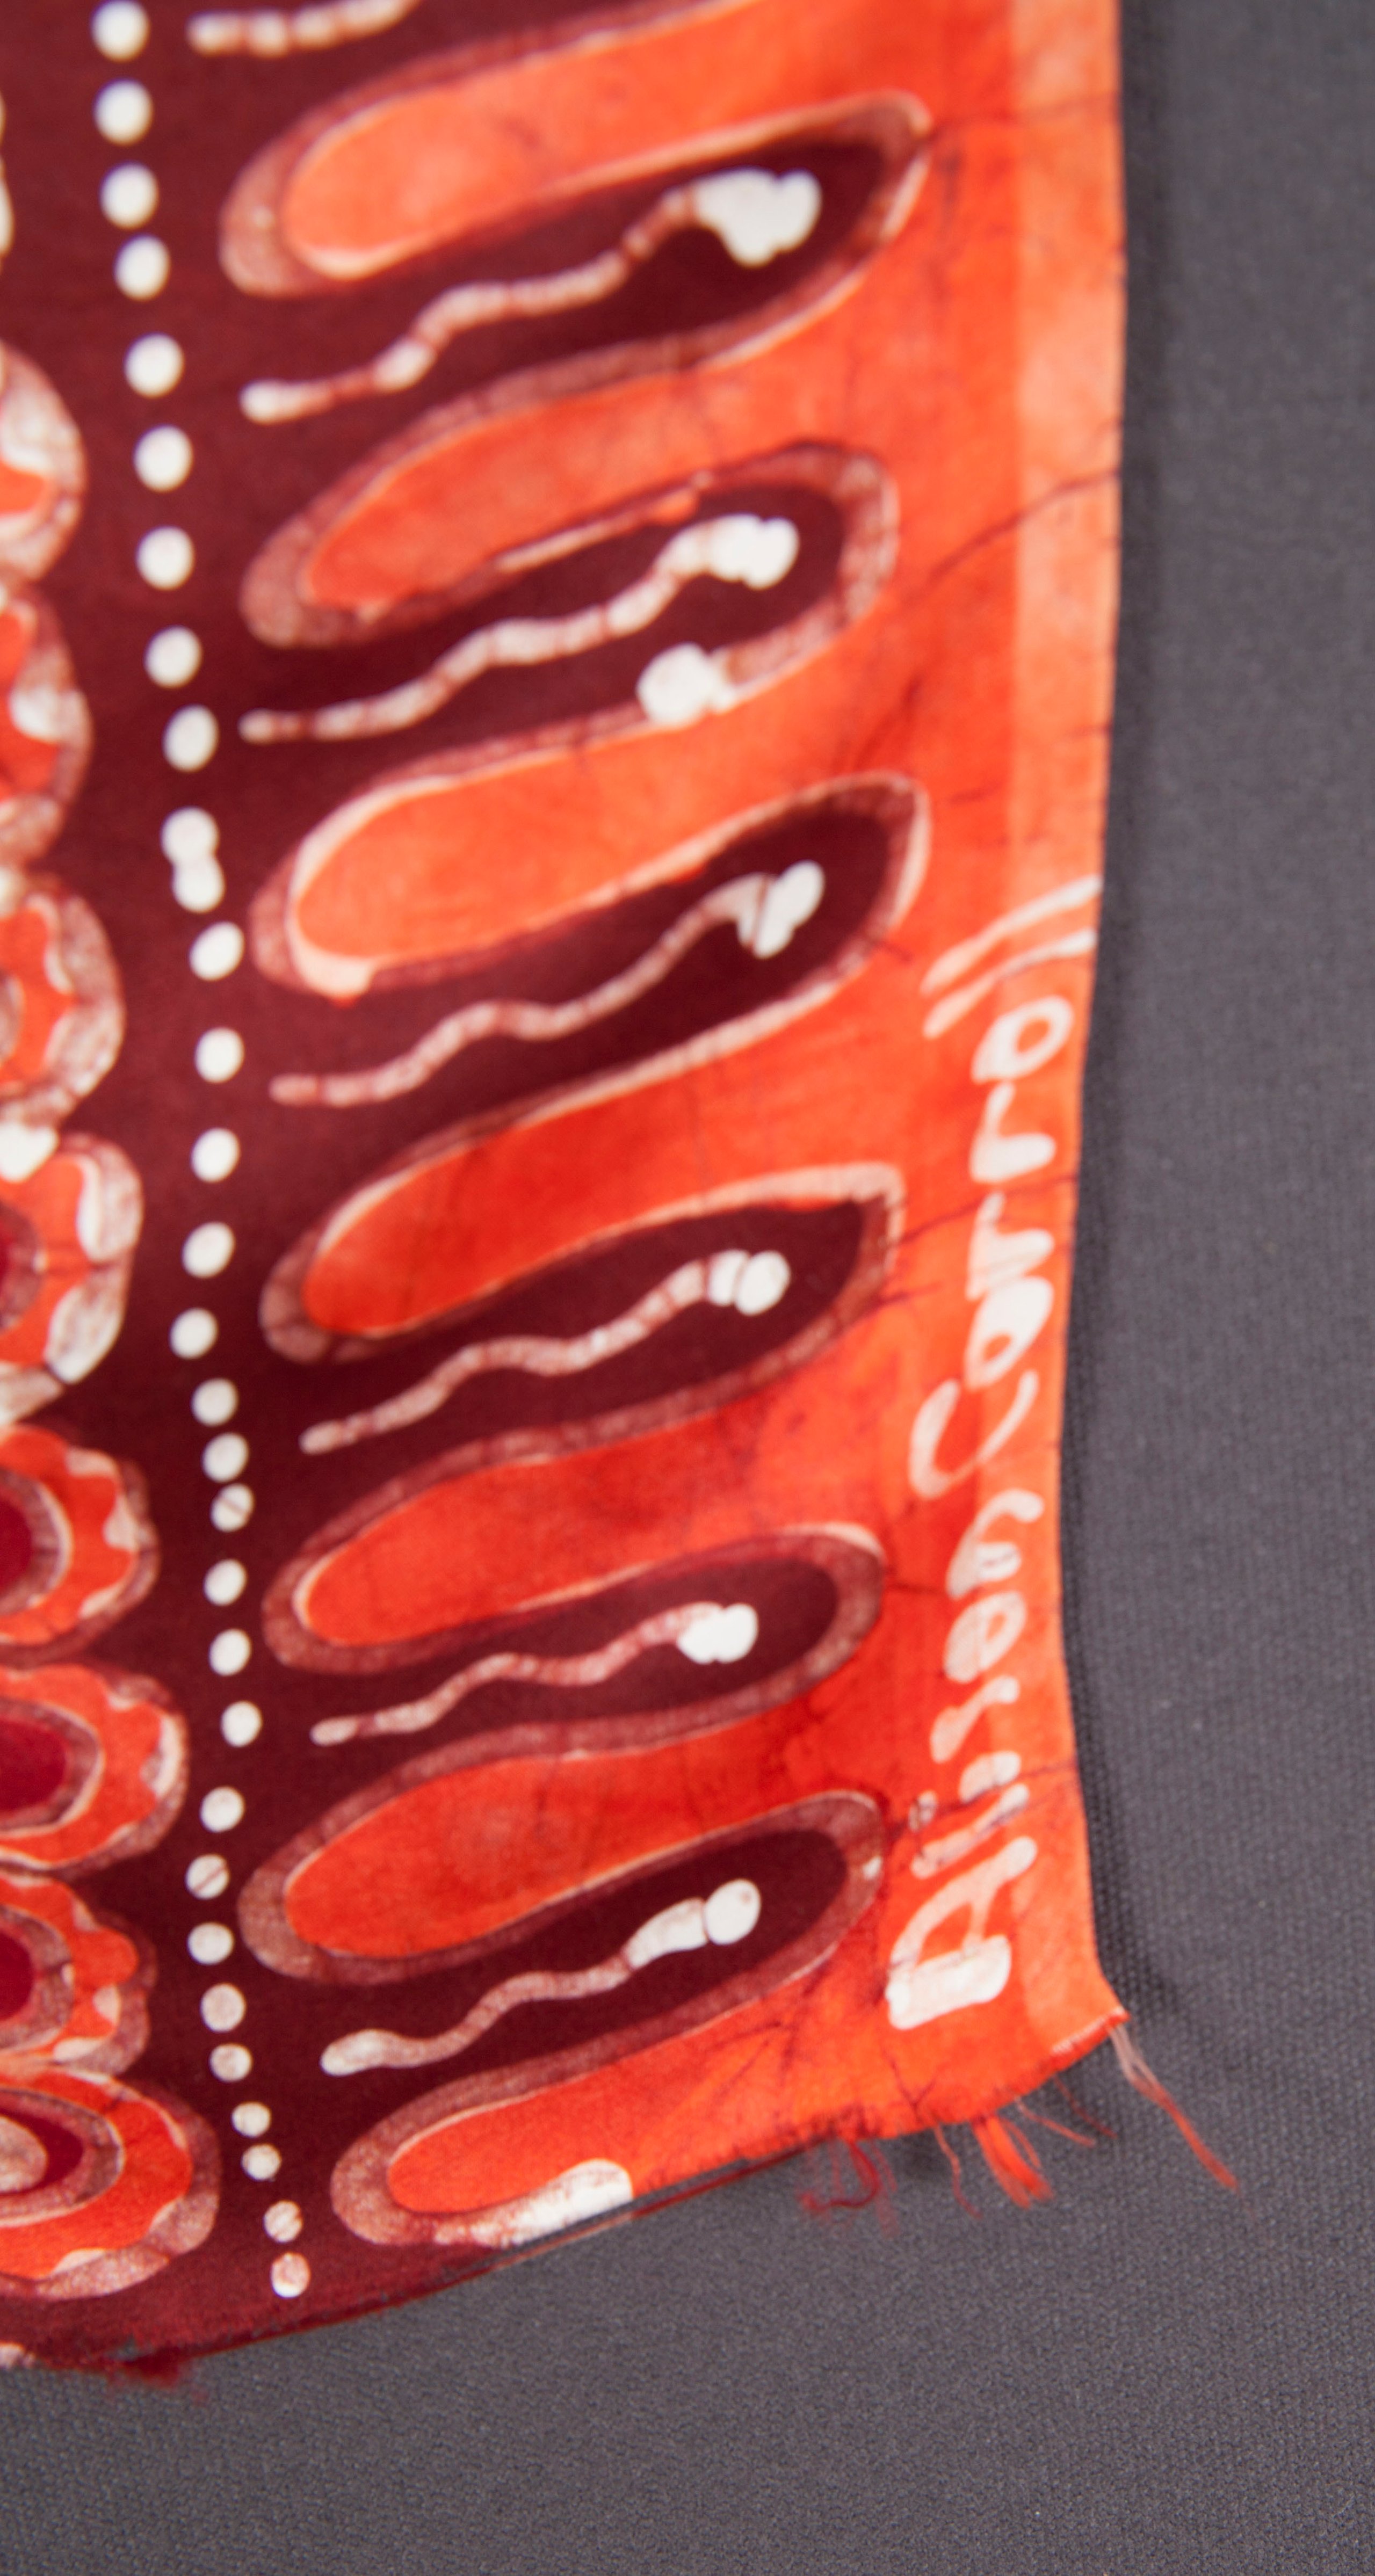 Silk textile length by Alison (Windlass) Carroll